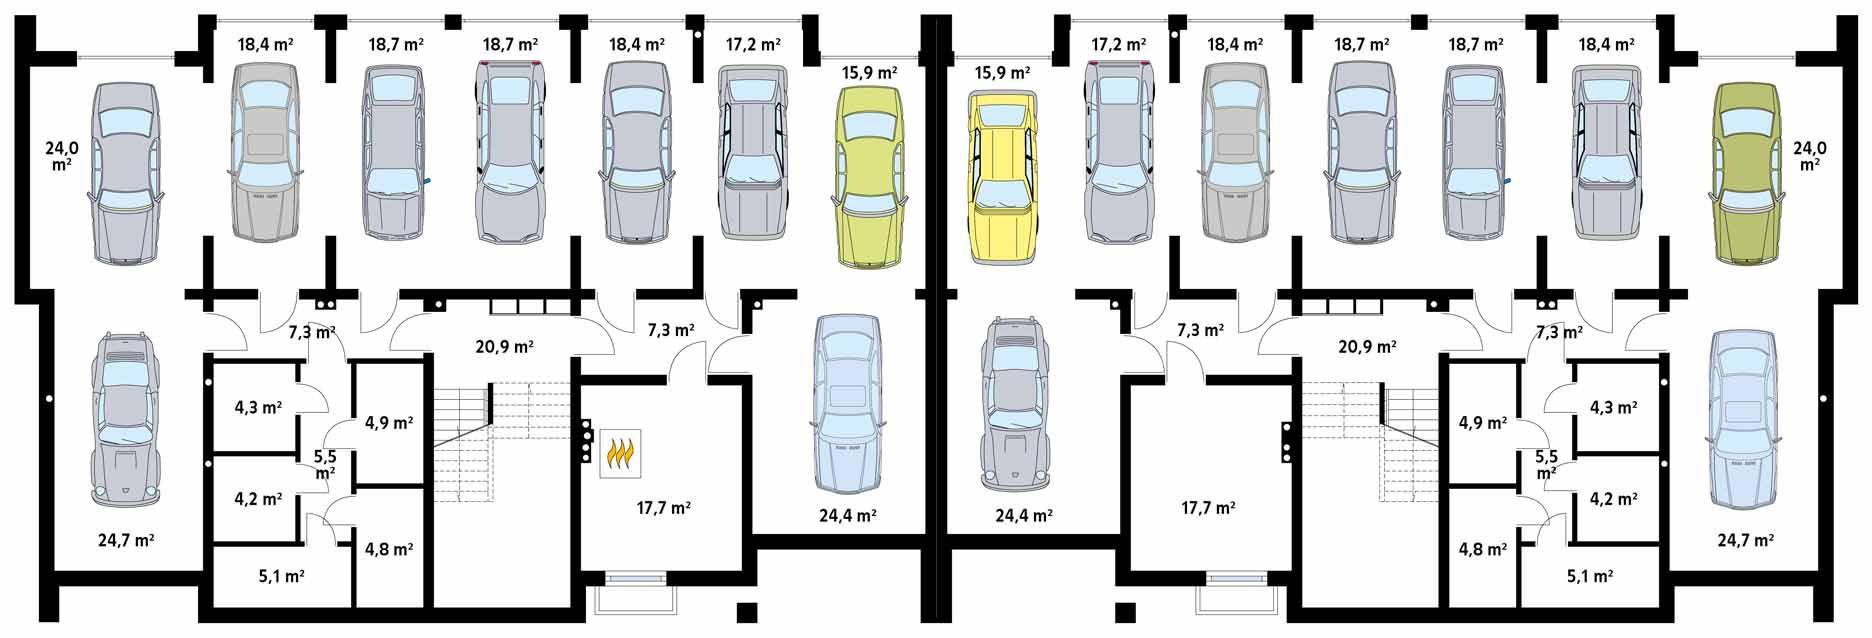 Площадь парковки на 1 машину: Размеры парковки в 2020 году